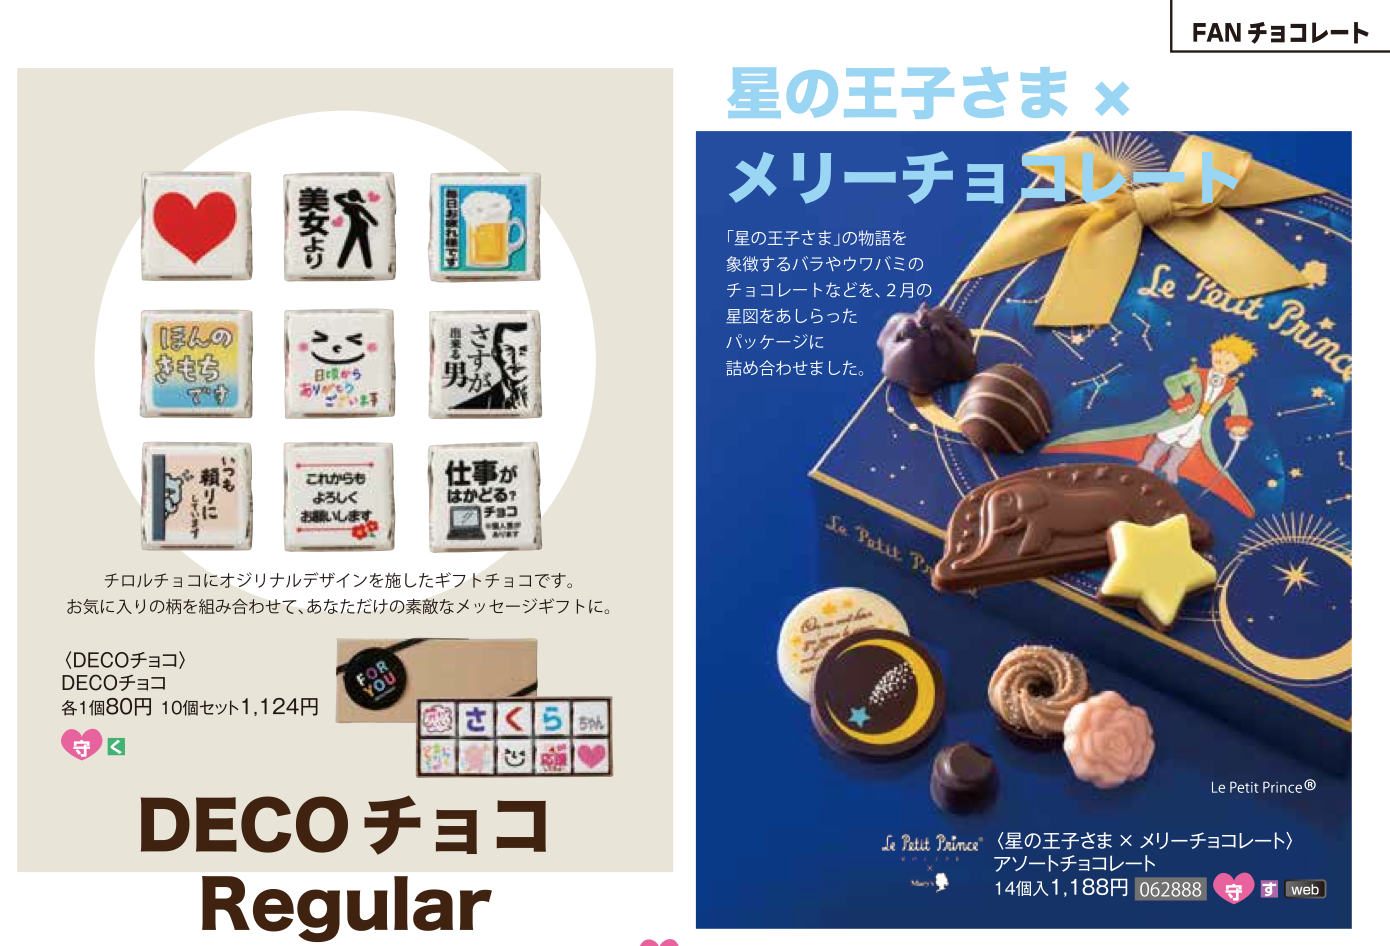 あの マリベル も予約限定とオンラインショッピングで買える 京阪百貨店のバレンタインチョコ一挙公開 ひらつー広告 枚方つーしん